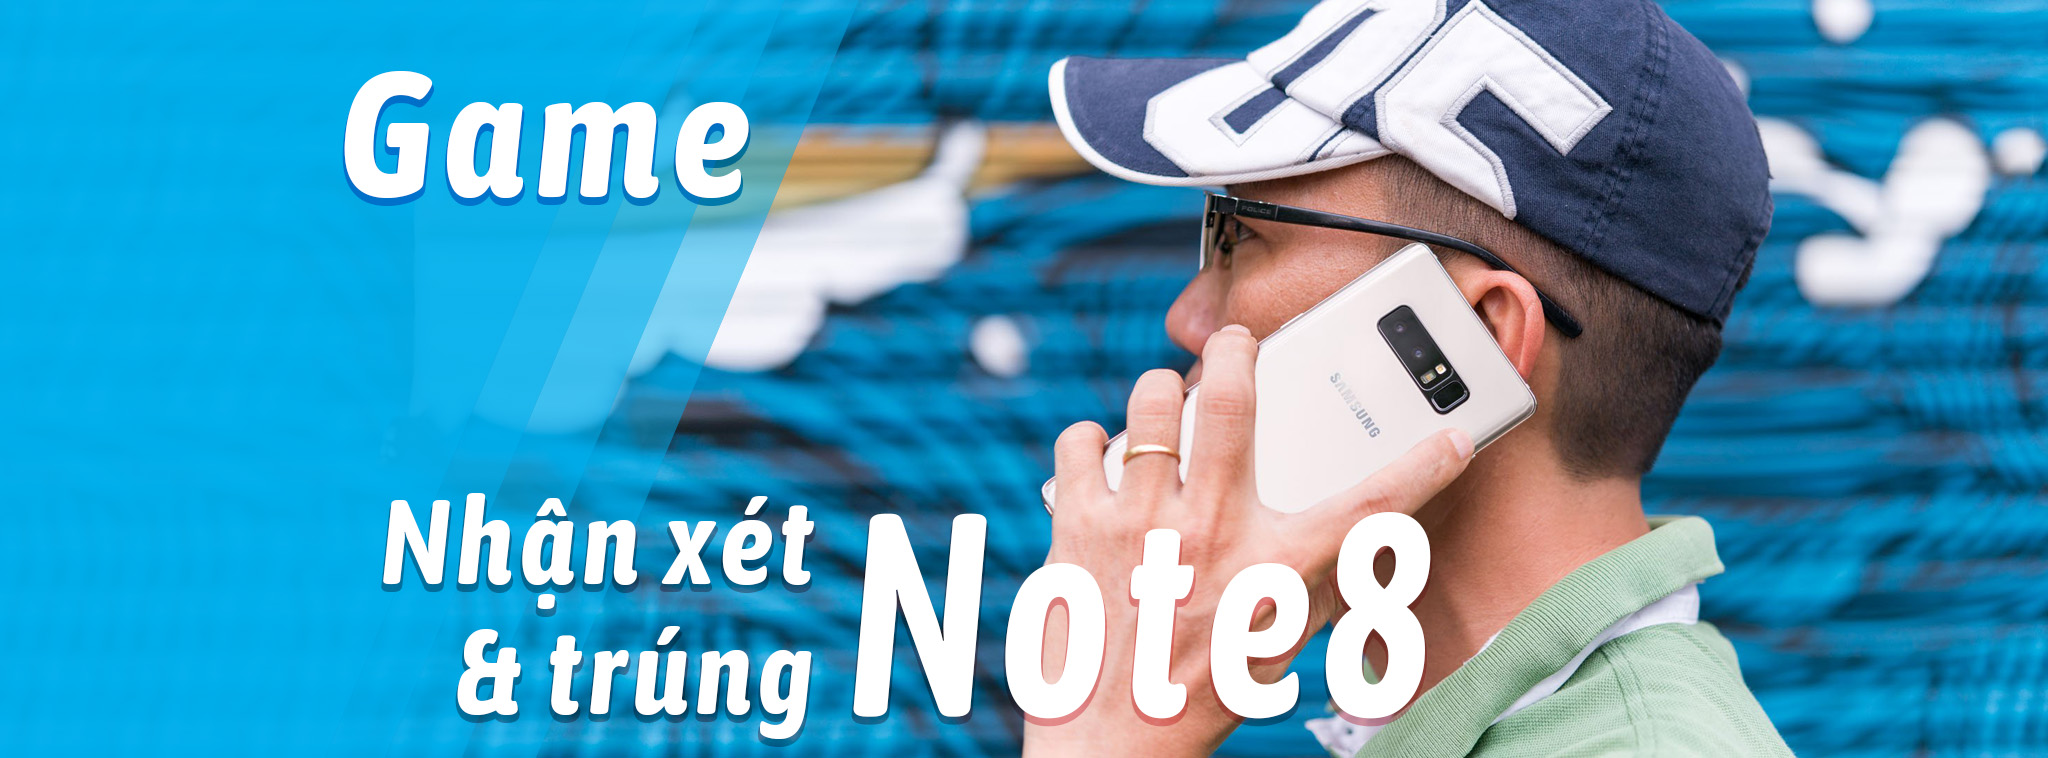 [Game] Mời bạn nhận xét thế mạnh của Note8, giải thưởng là một chiếc Note8